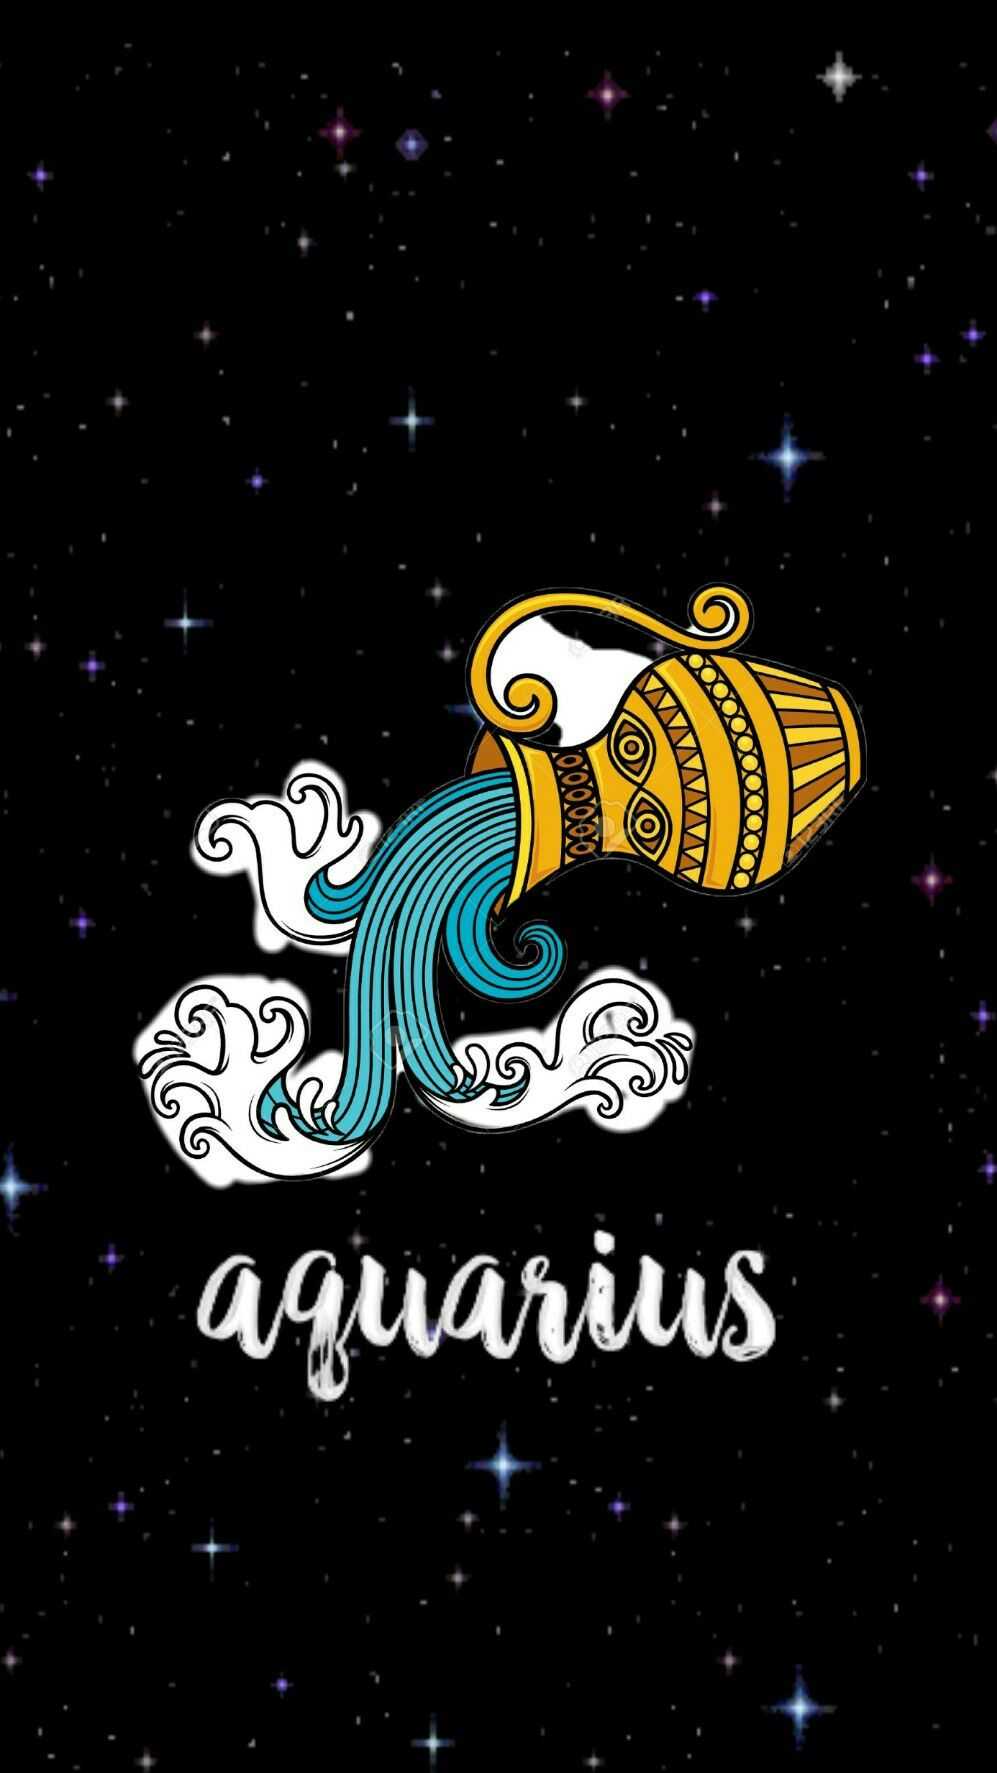 Aquarius wallpaper for your phone! - Aquarius